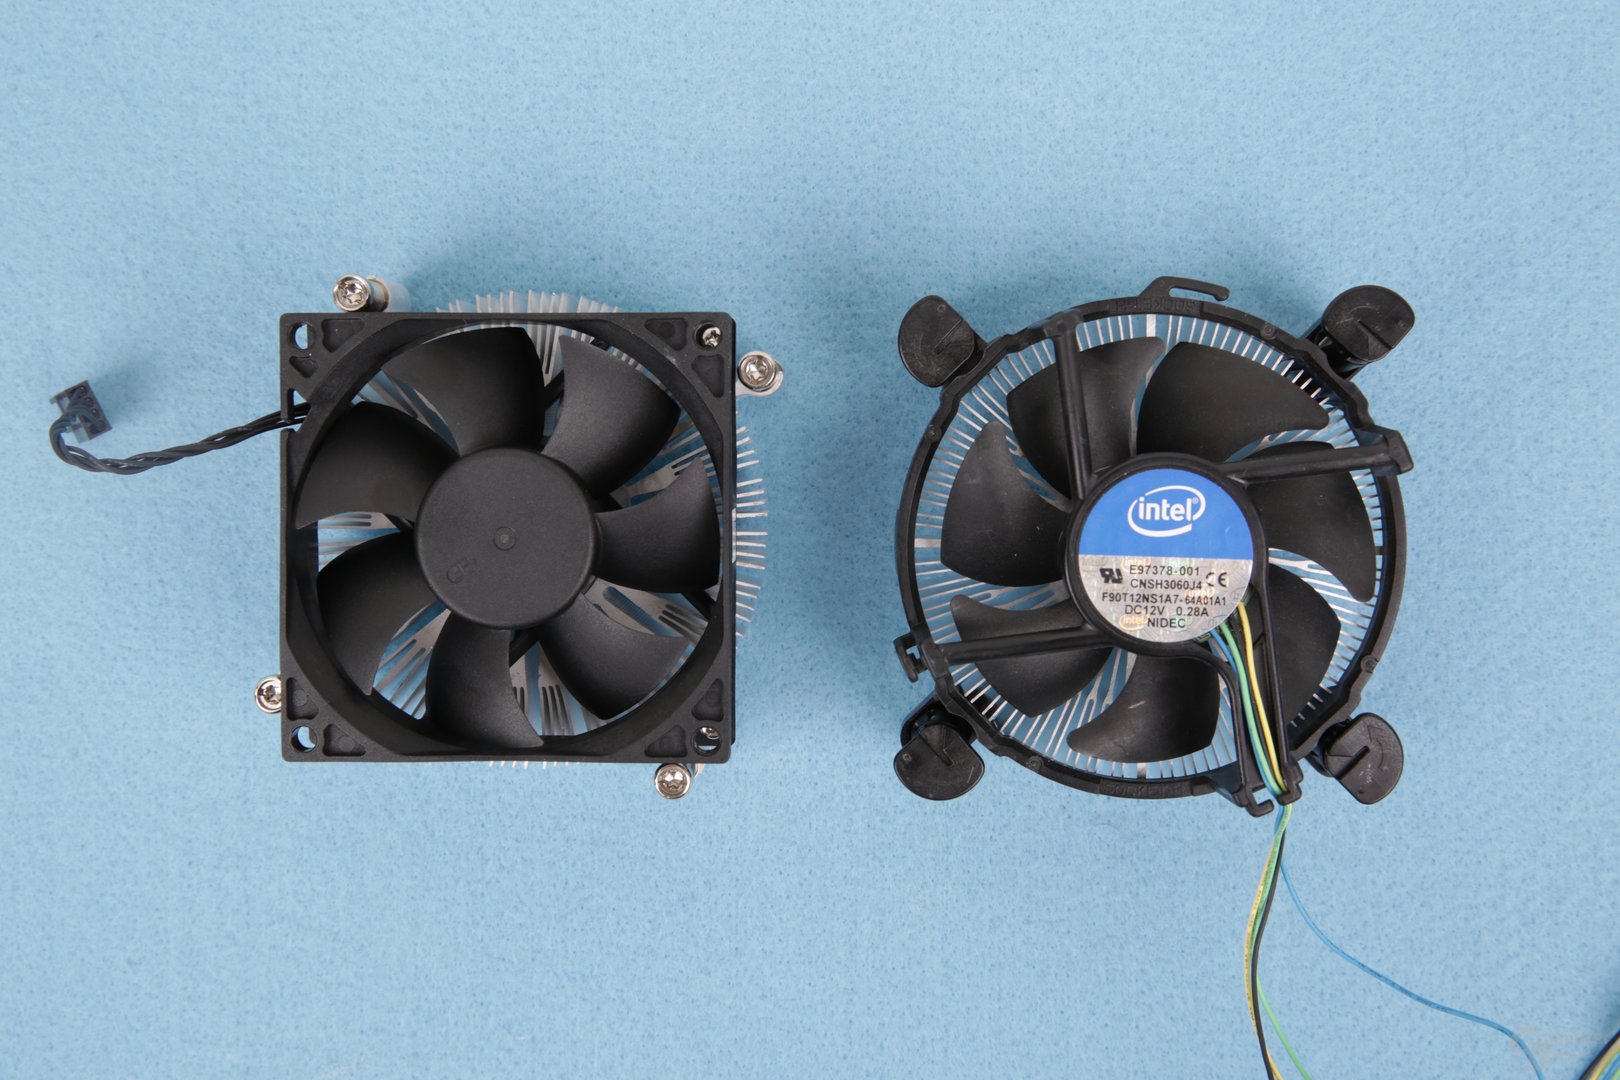 HP-Kühler im Vergleich zum Intel-Boxed